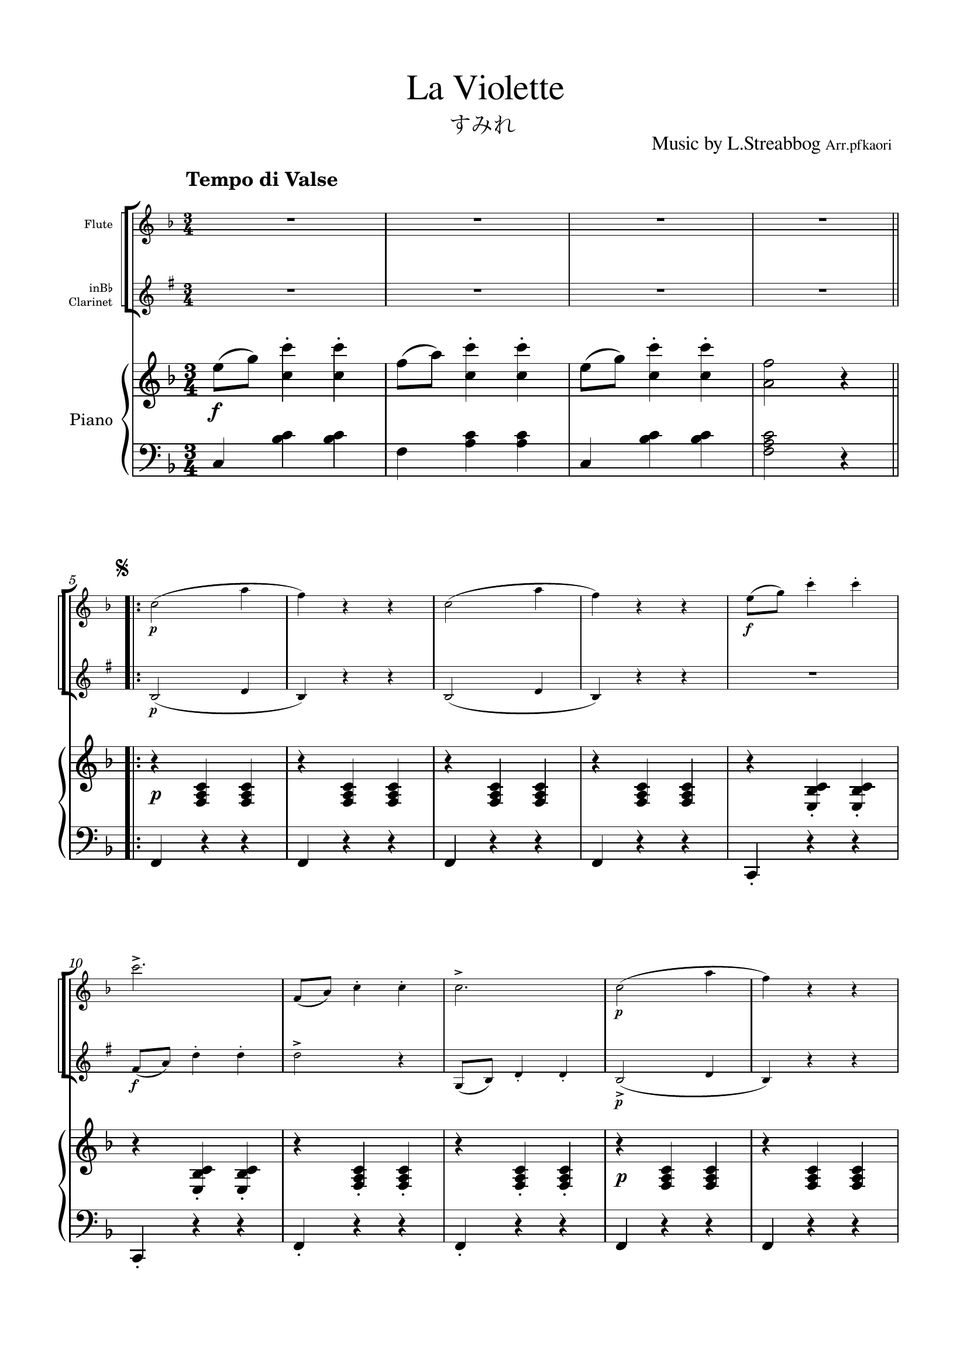 Strea bogg - La Violette (Piano trio / Flute & Clarinet) by pfkaori